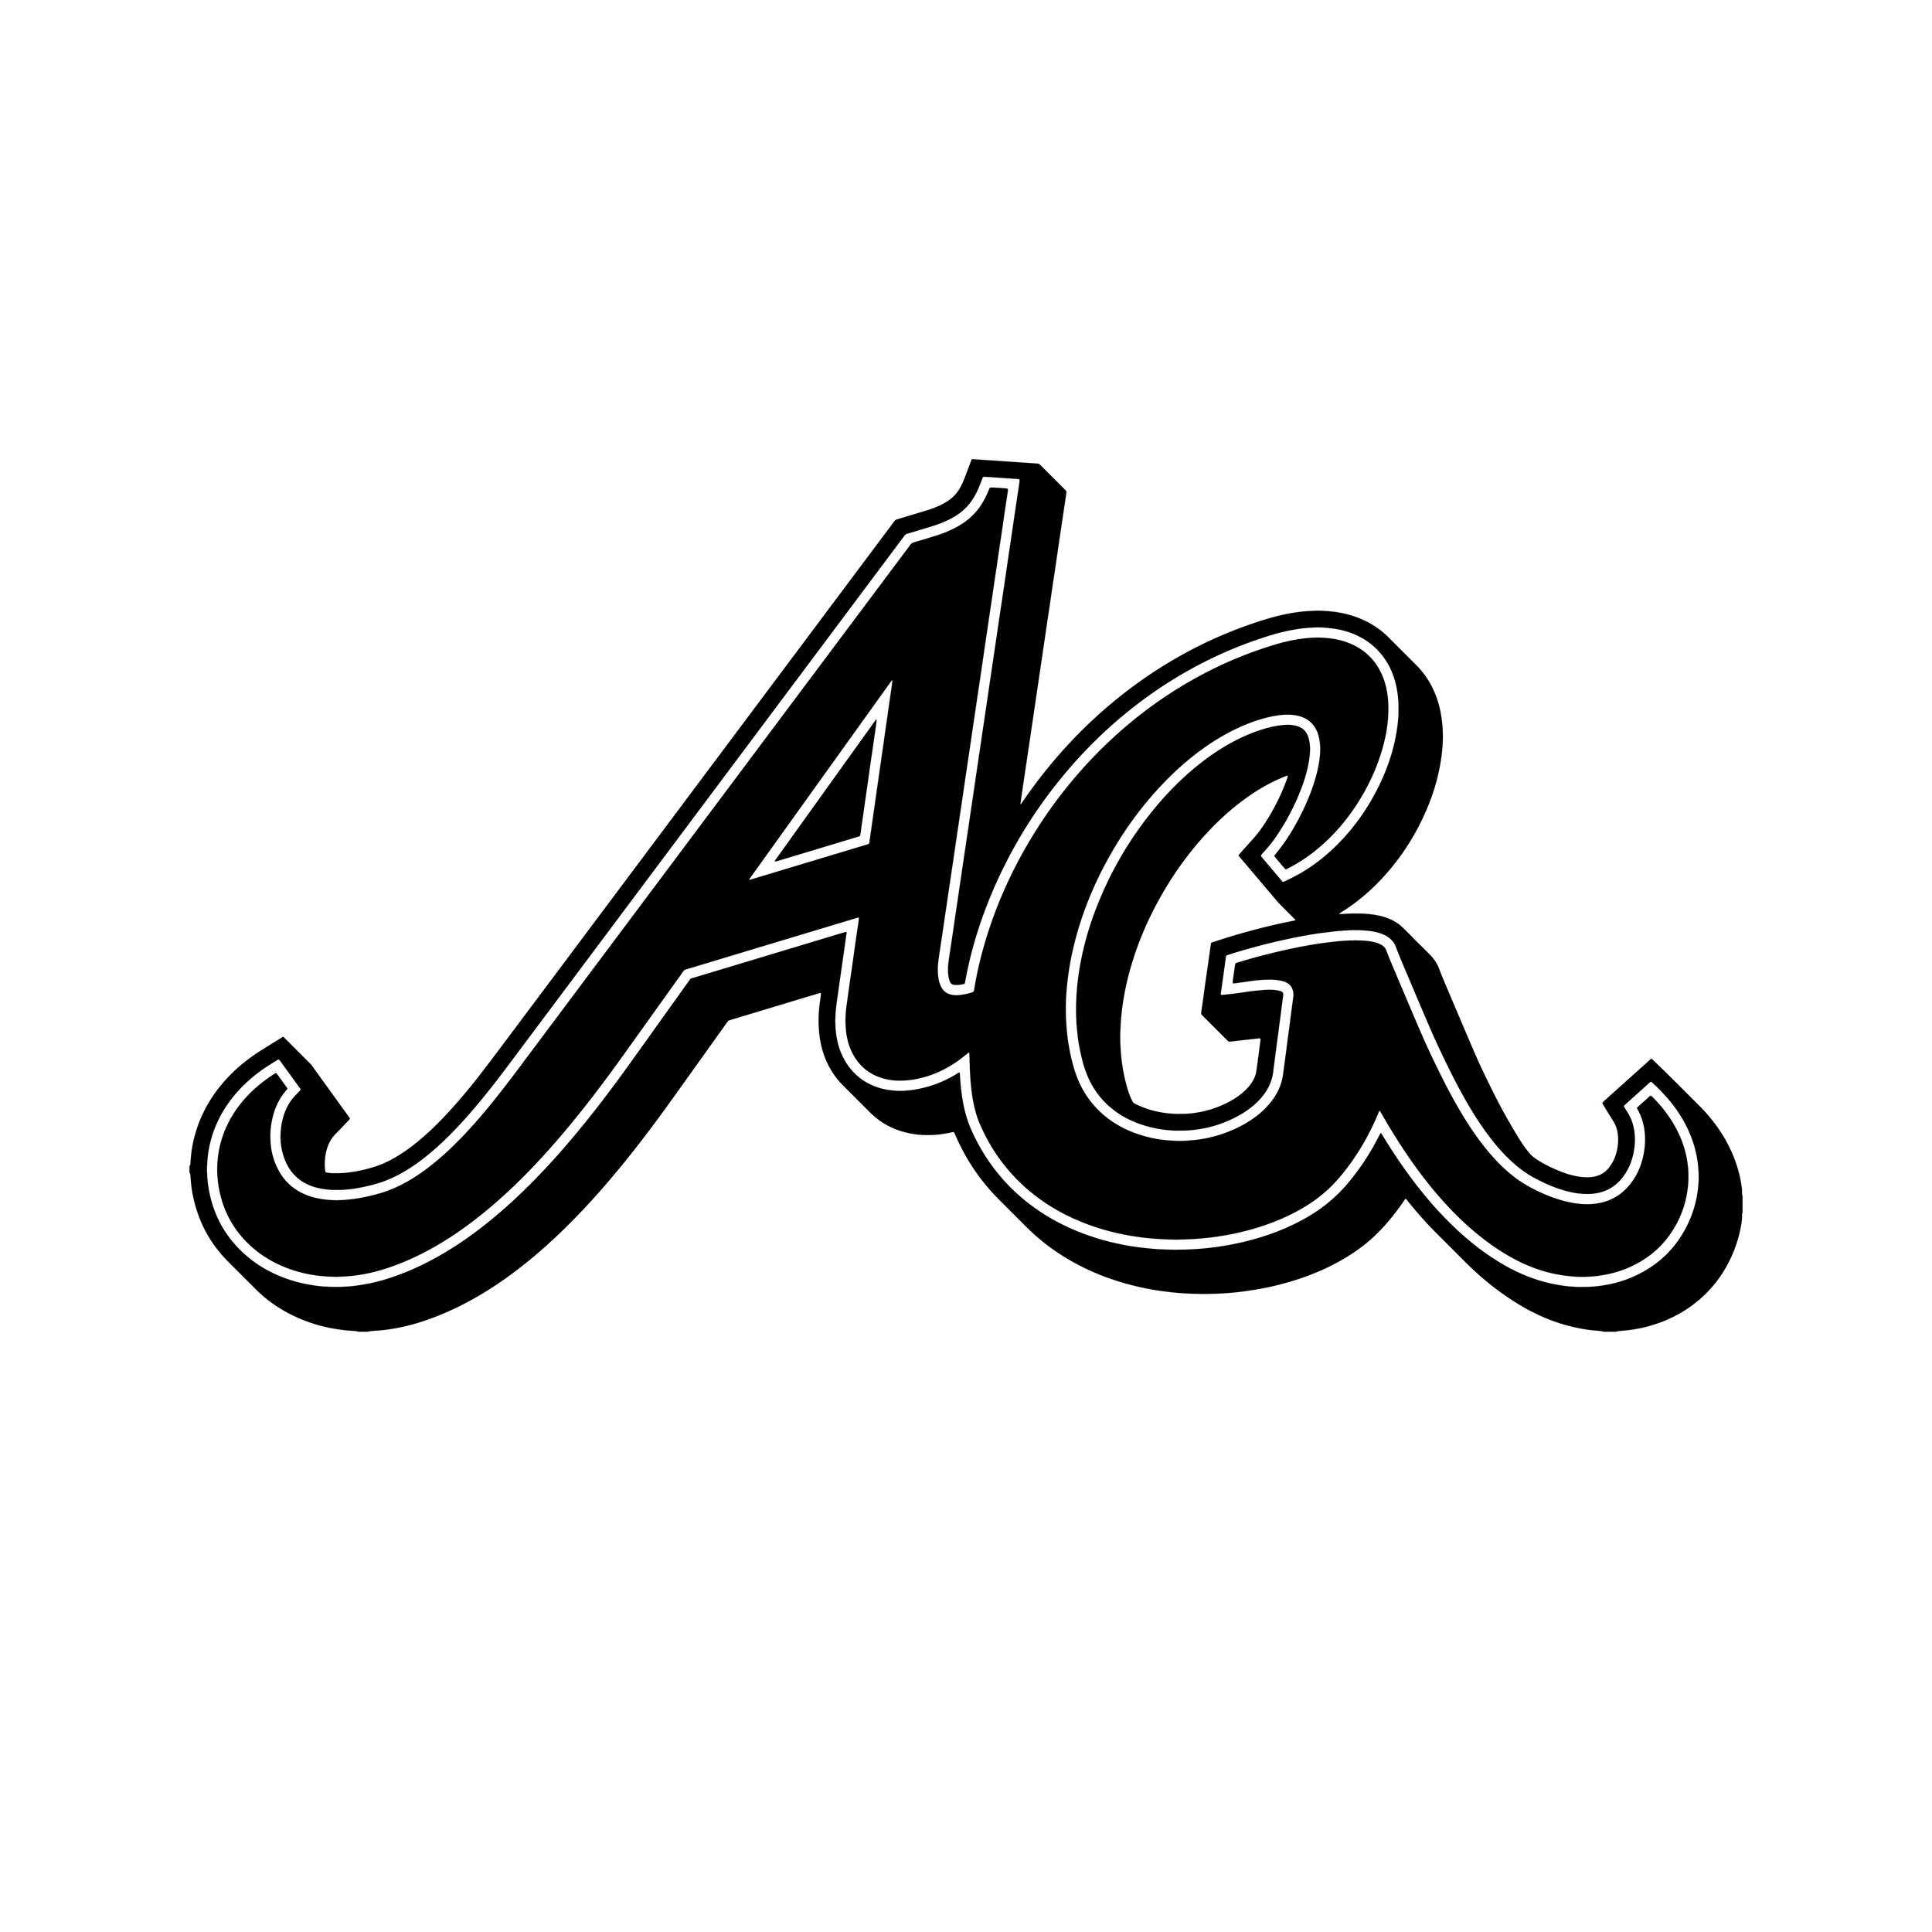 ALLE IS GOOD [logo]-04.jpg